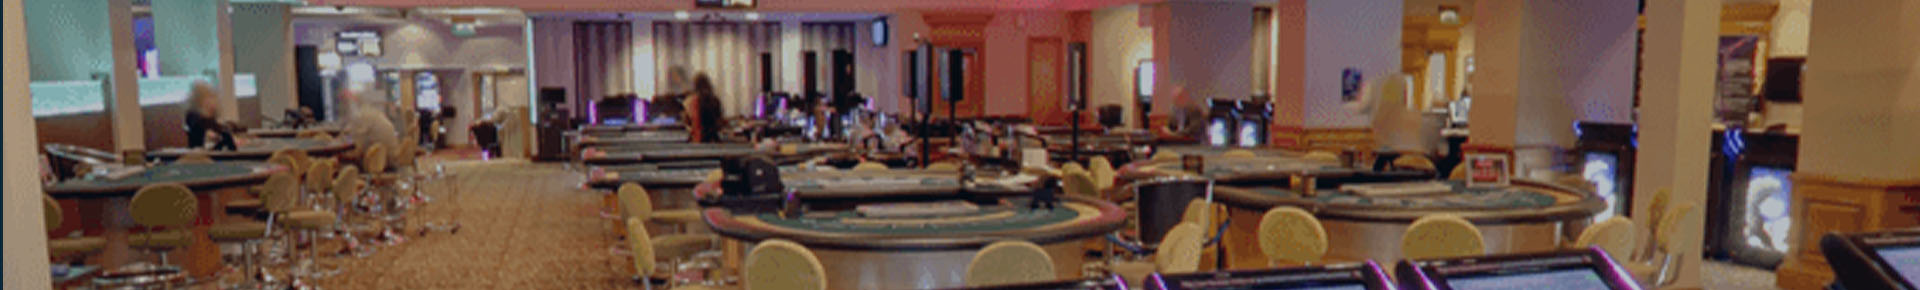 Grosvenor Casino Golden Horseshoe